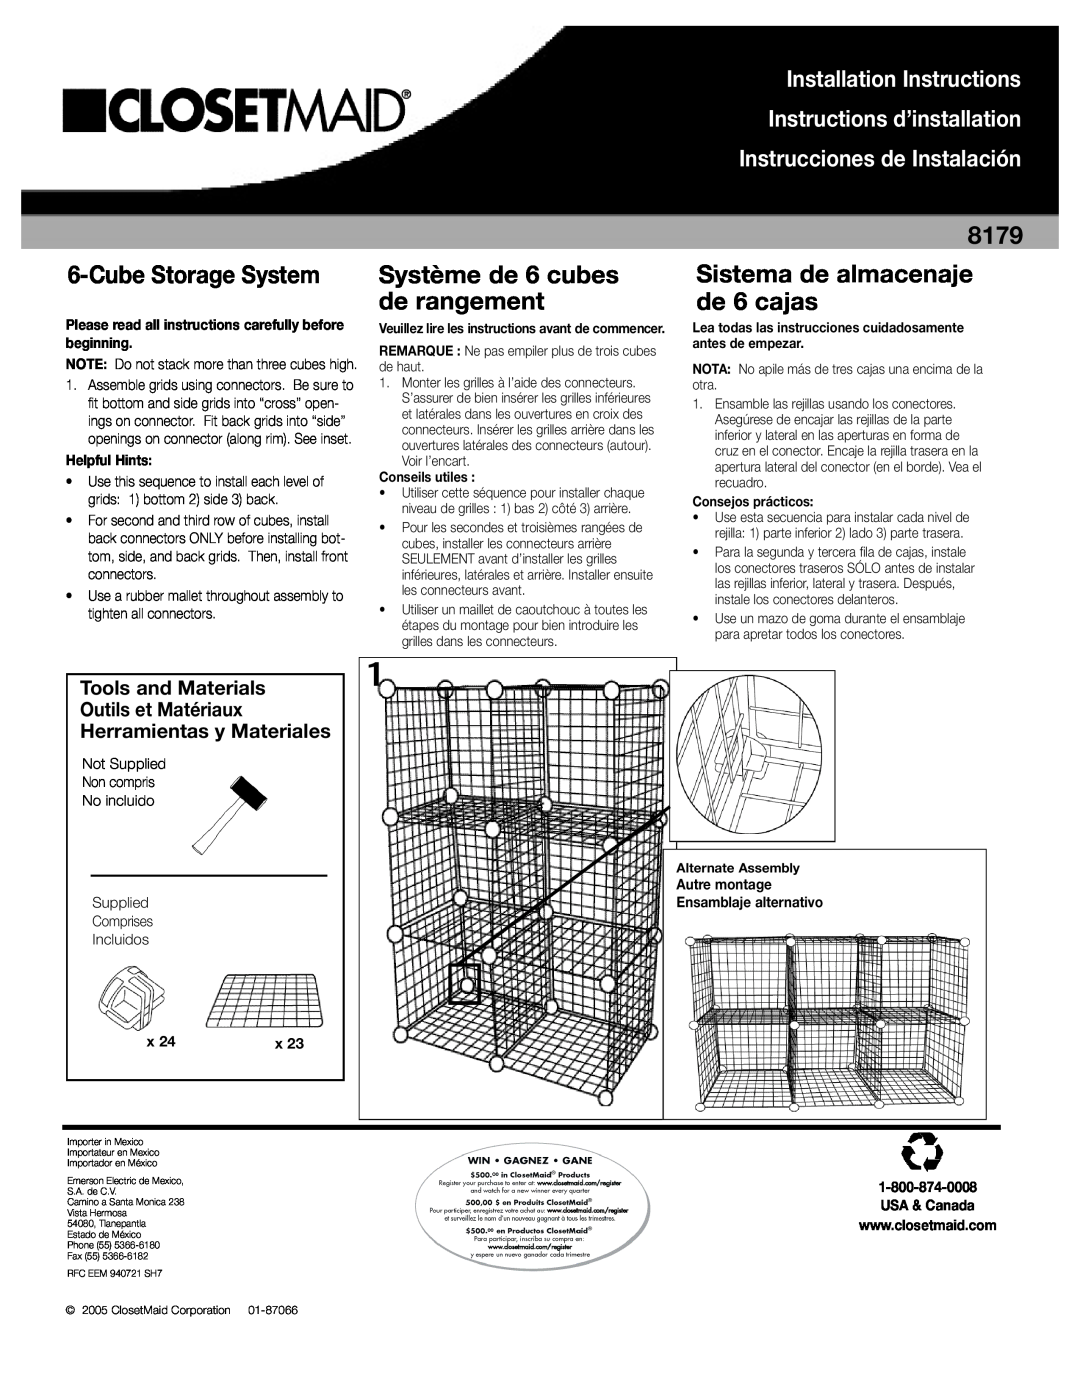 Closet Maid 6-Cube Storage System installation instructions CubeStorage System, Système de 6 cubes de rangement 